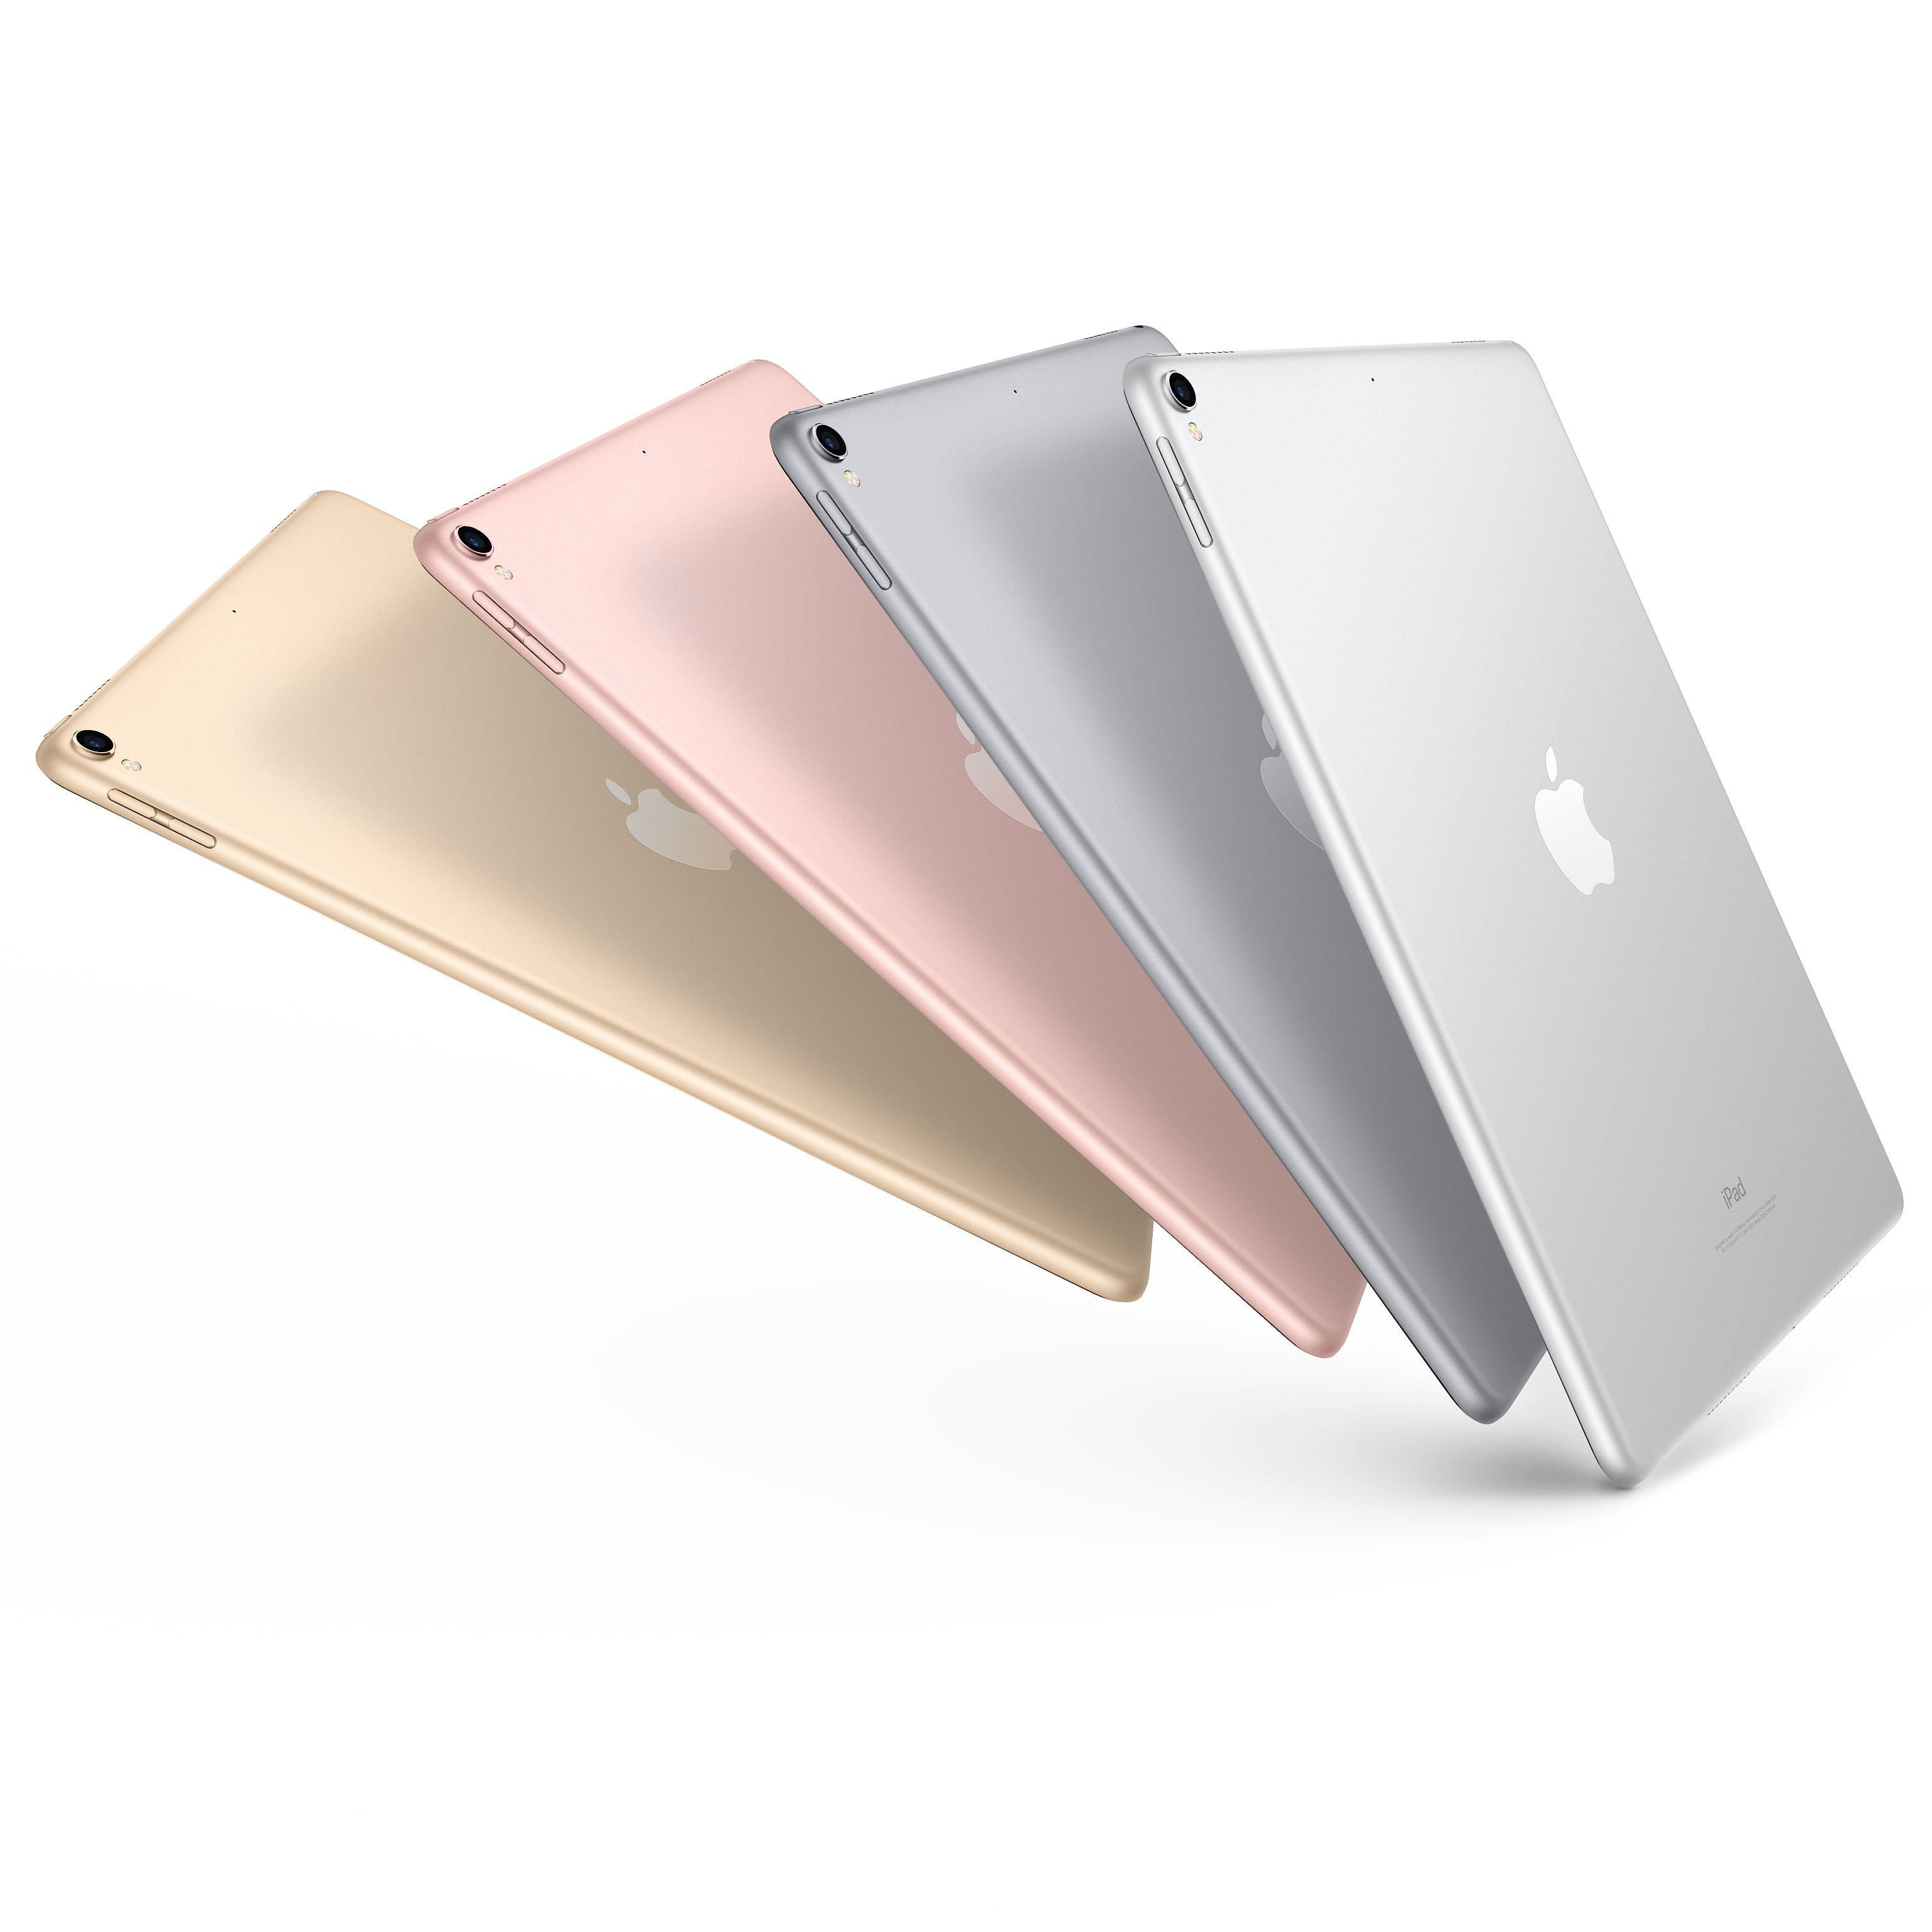 苹果(Apple) iPad pro 新款10.5英寸平板电脑 金色64GB WLAN版 MQDX2CH/A